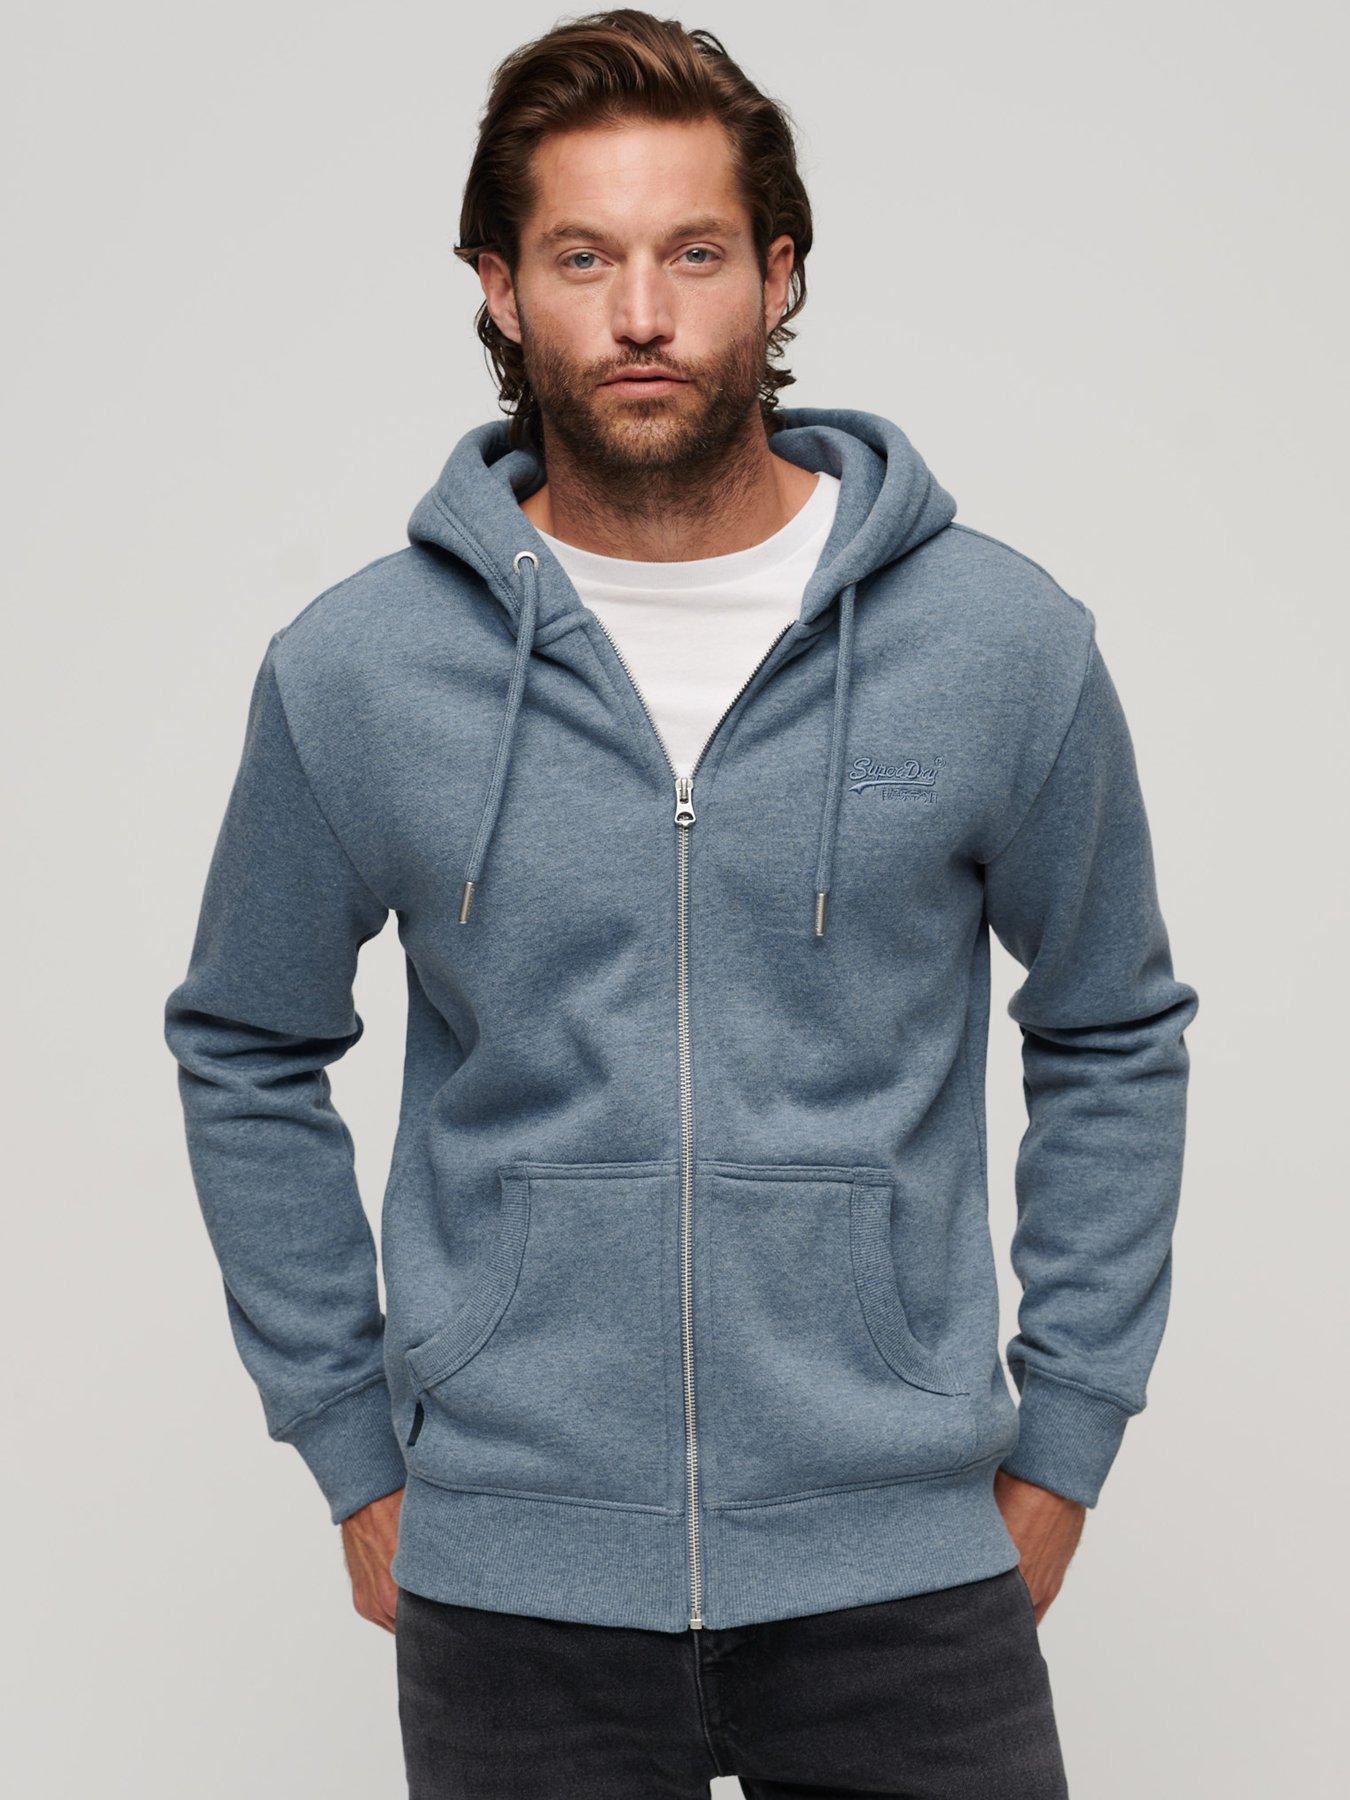 Shop Men's Hoodies & Sweatshirts, Pullover, Zip